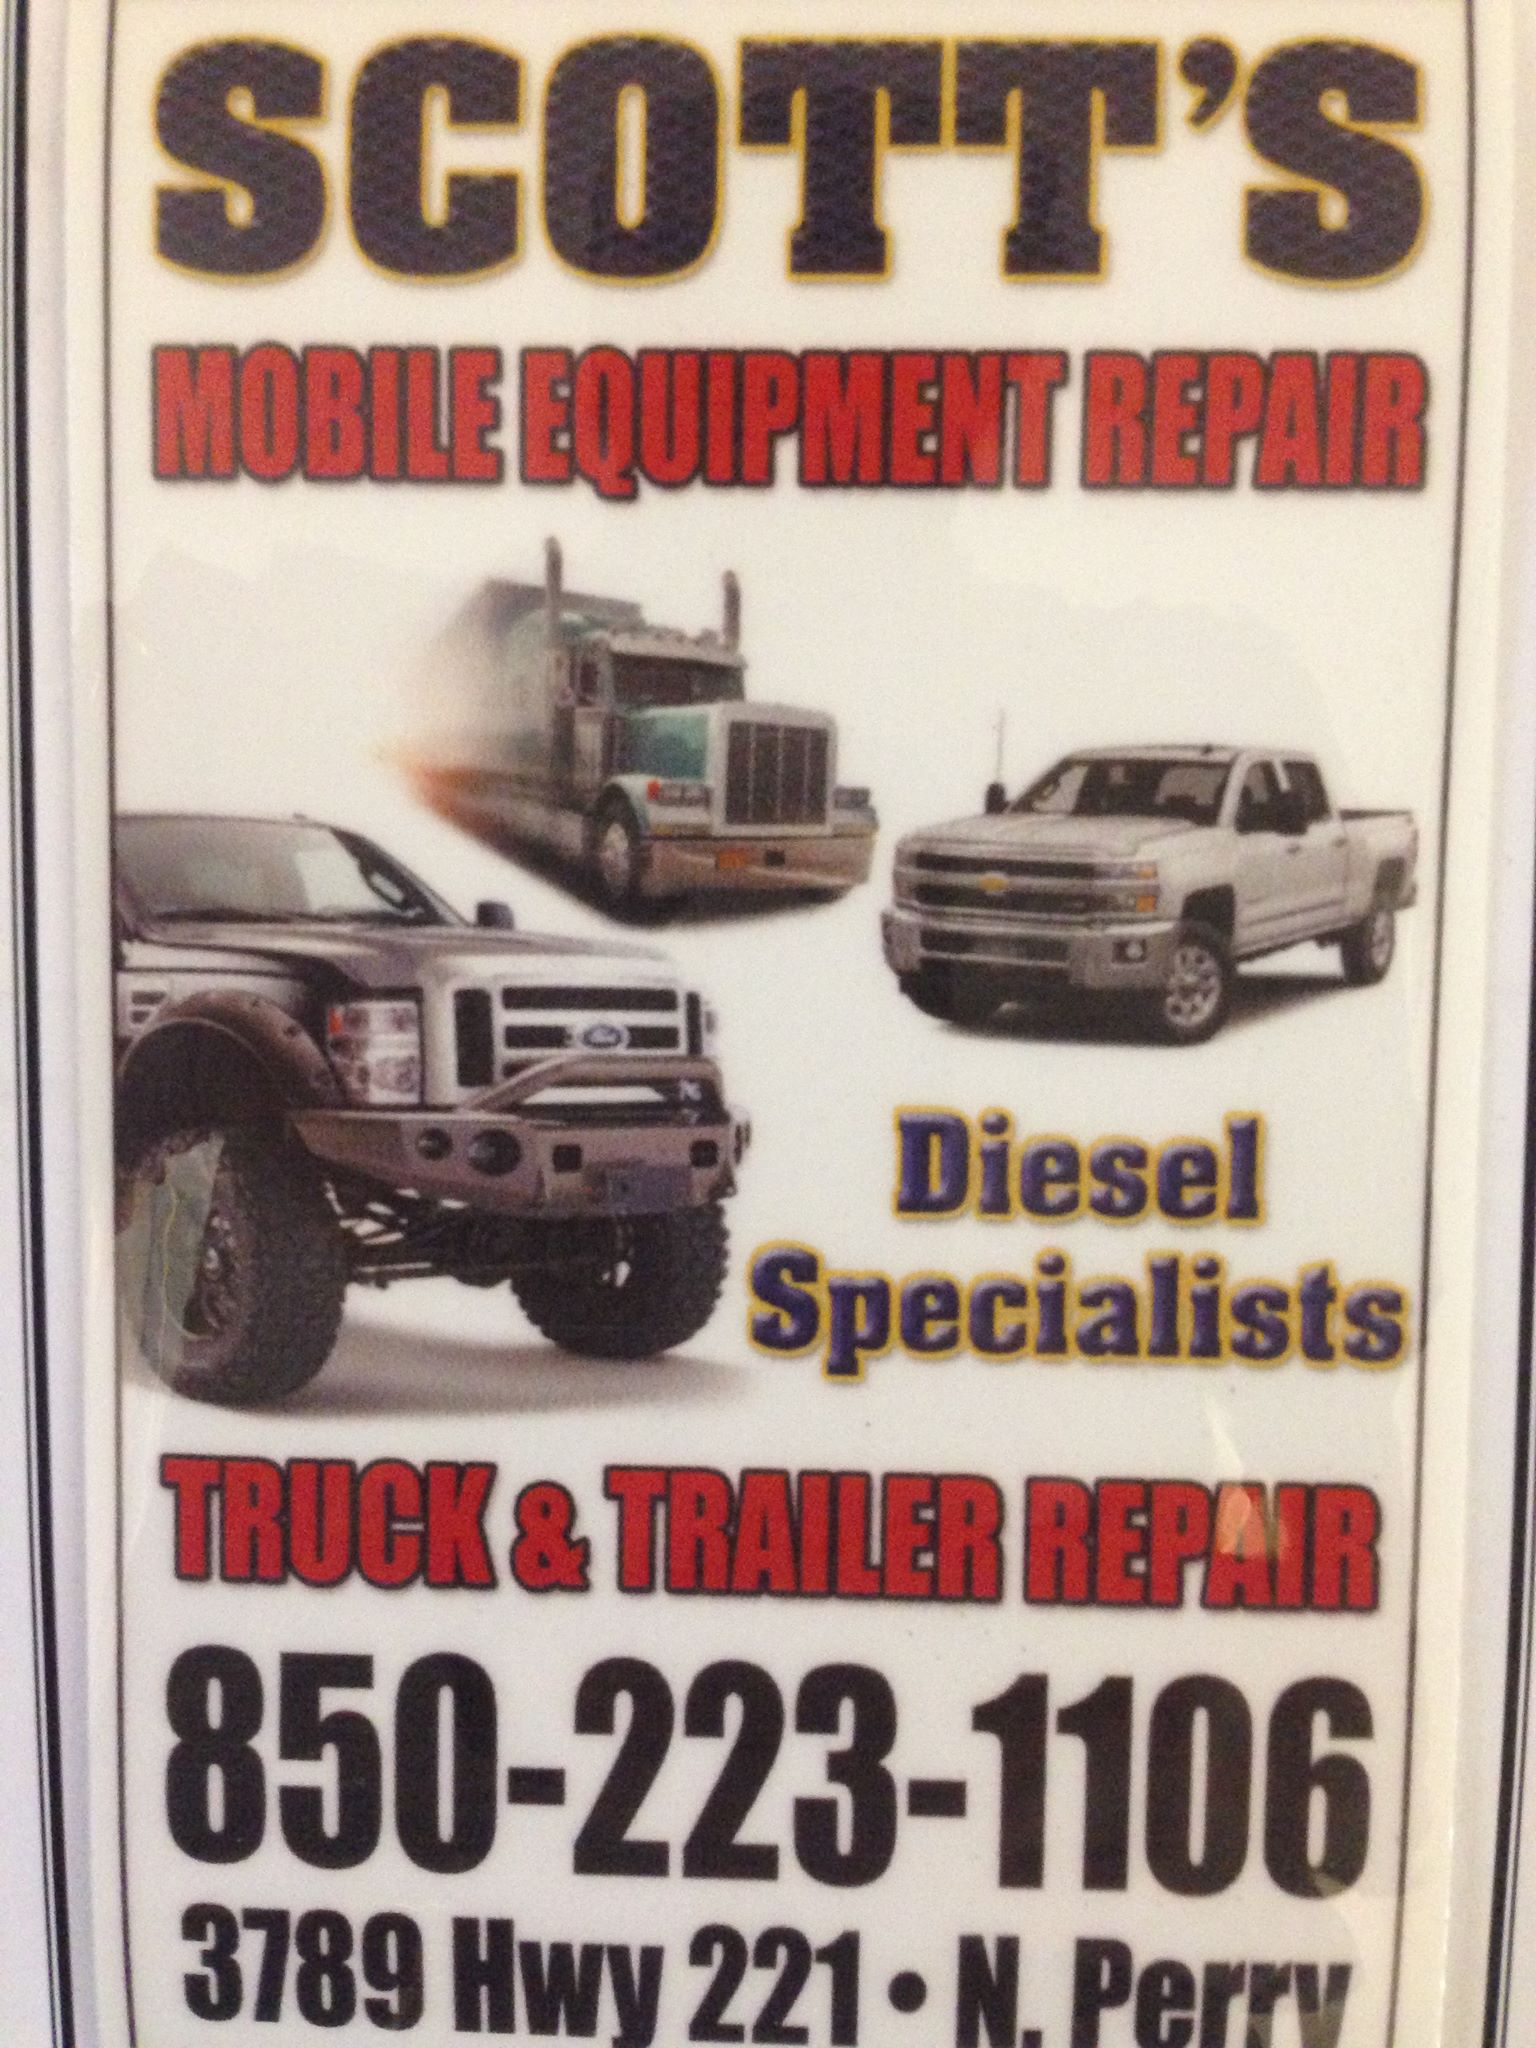 Scott Equipment & Repair